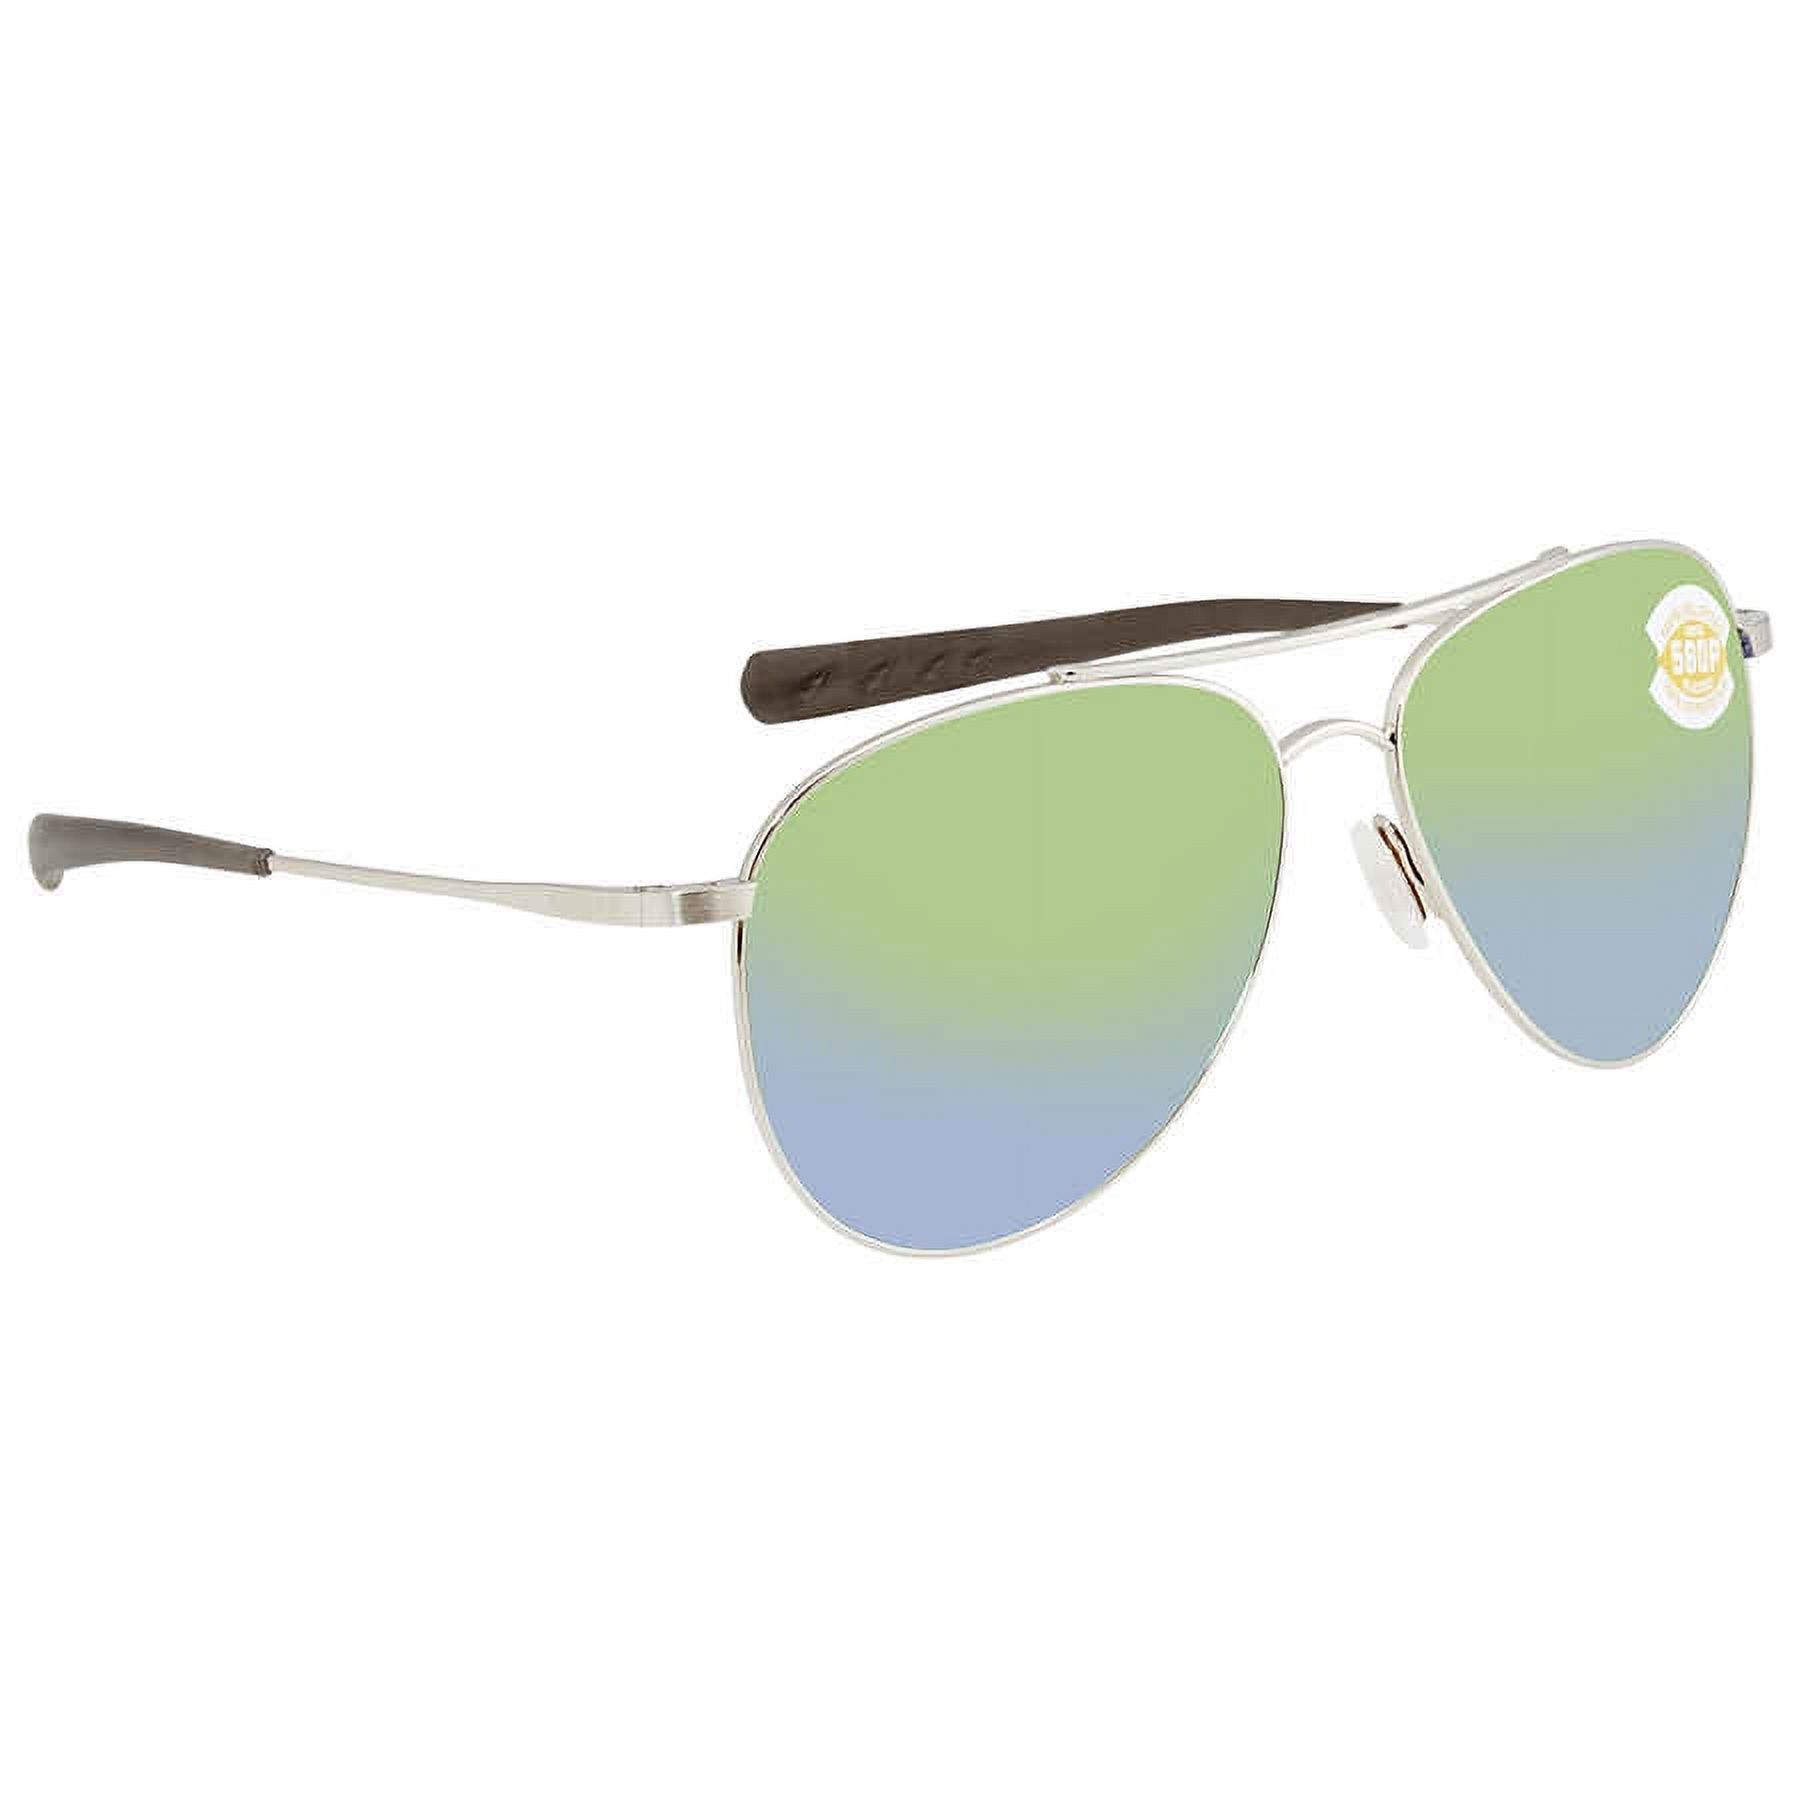 Costa Del Mar Cook Green Mirror 580P Sunglasses Ladies Sunglasses COO 21 OGMP - image 1 of 3